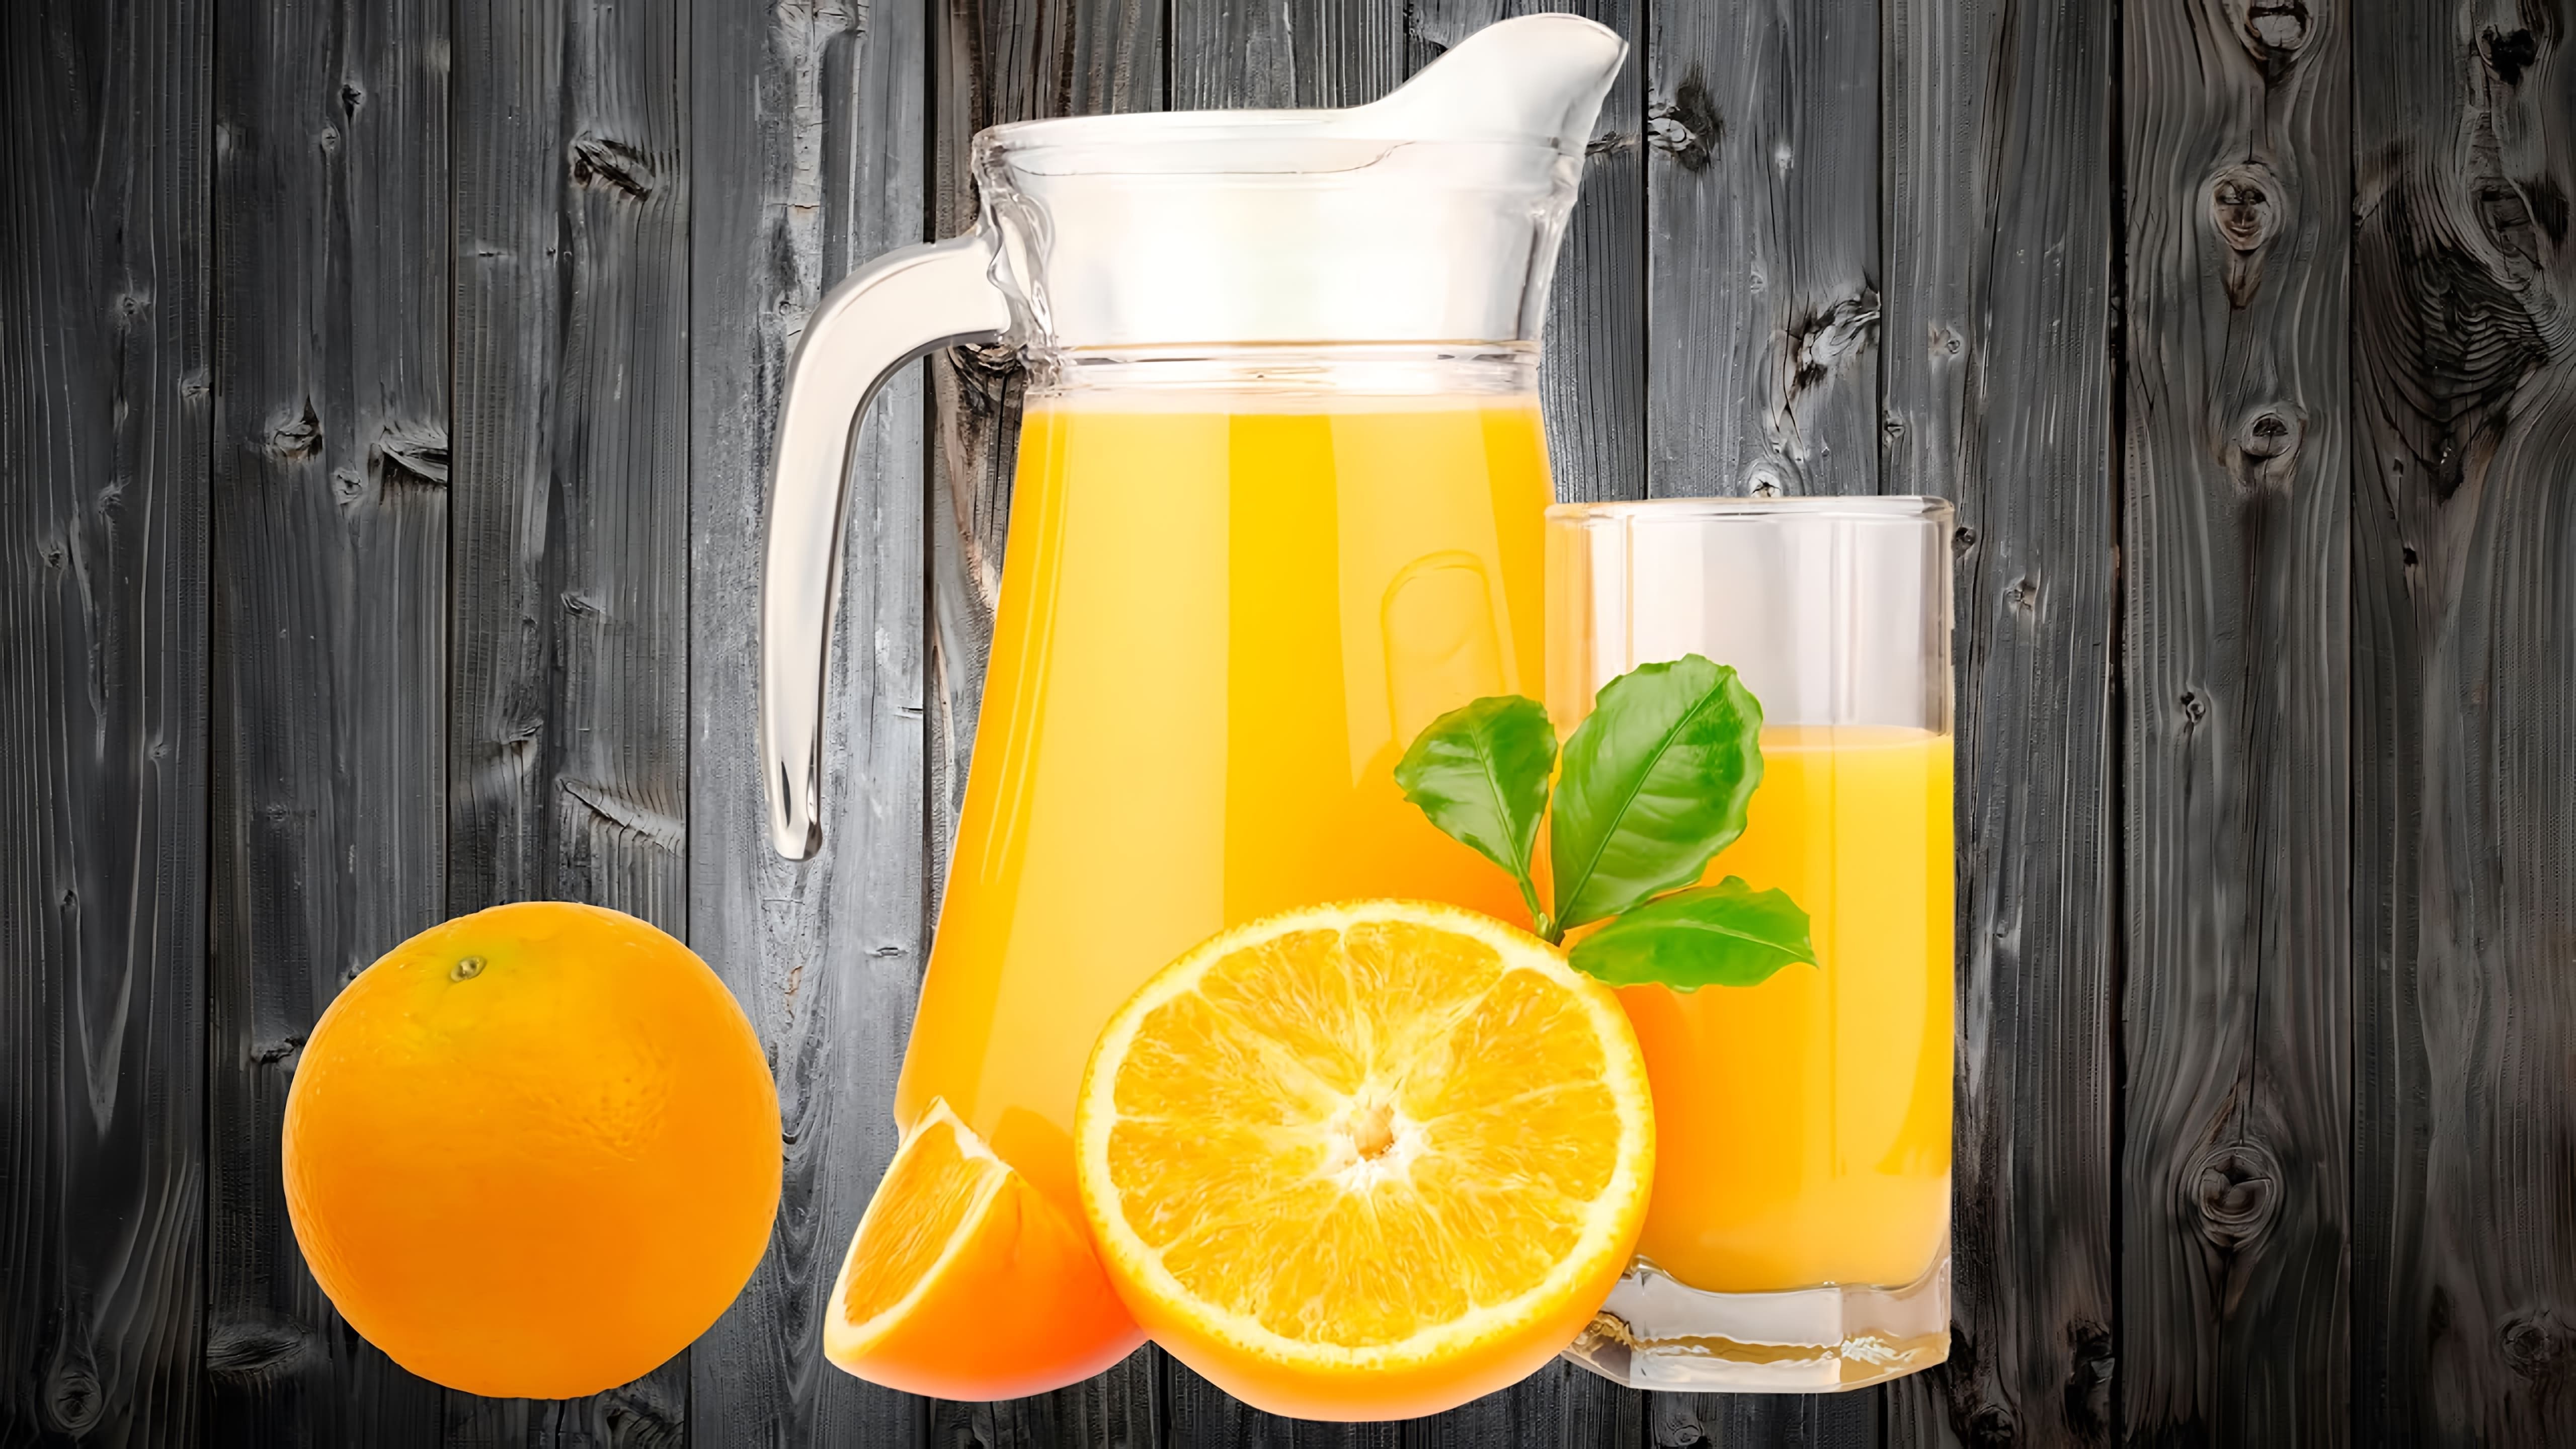 В этом видео демонстрируется рецепт приготовления апельсинового сока в домашних условиях